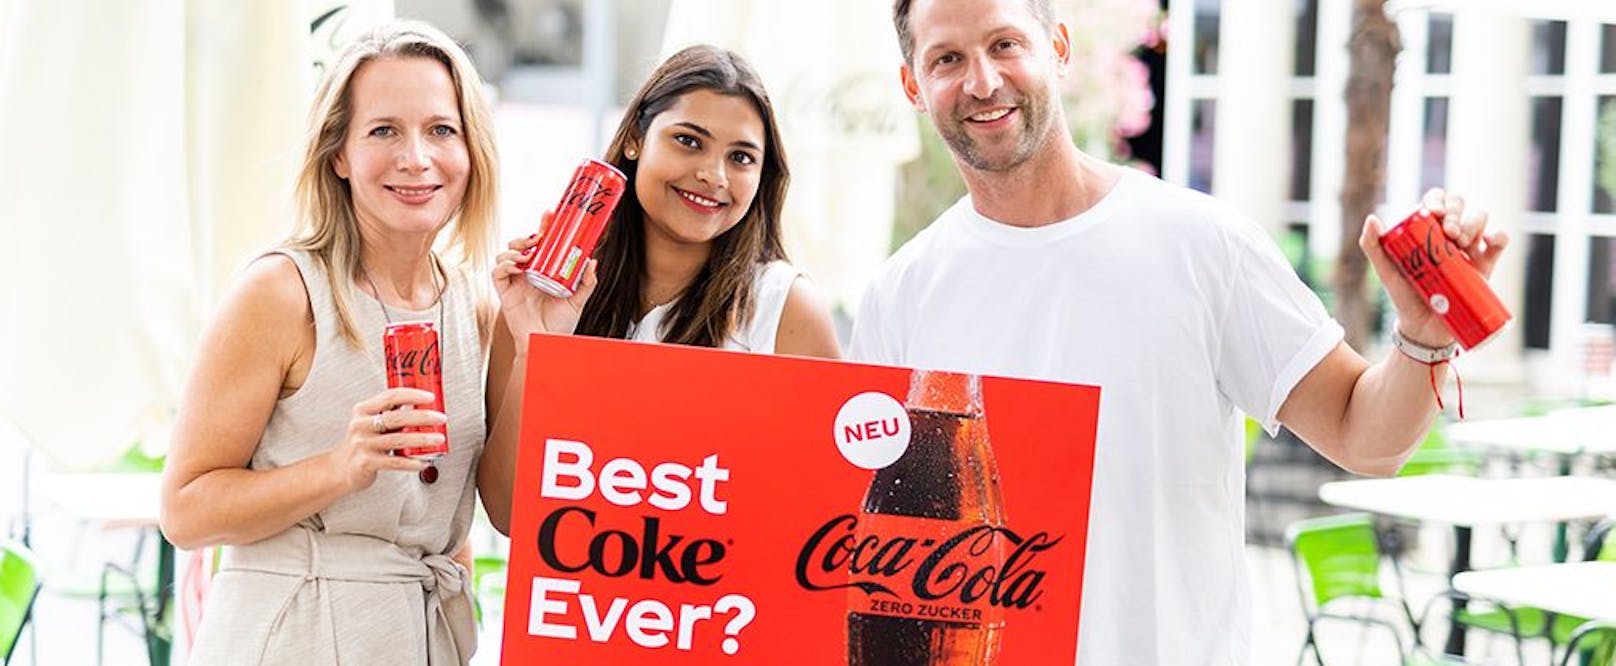 Coca-Cola hat die Etikette des zuckerfreien Coca-Cola Zeros verändert.